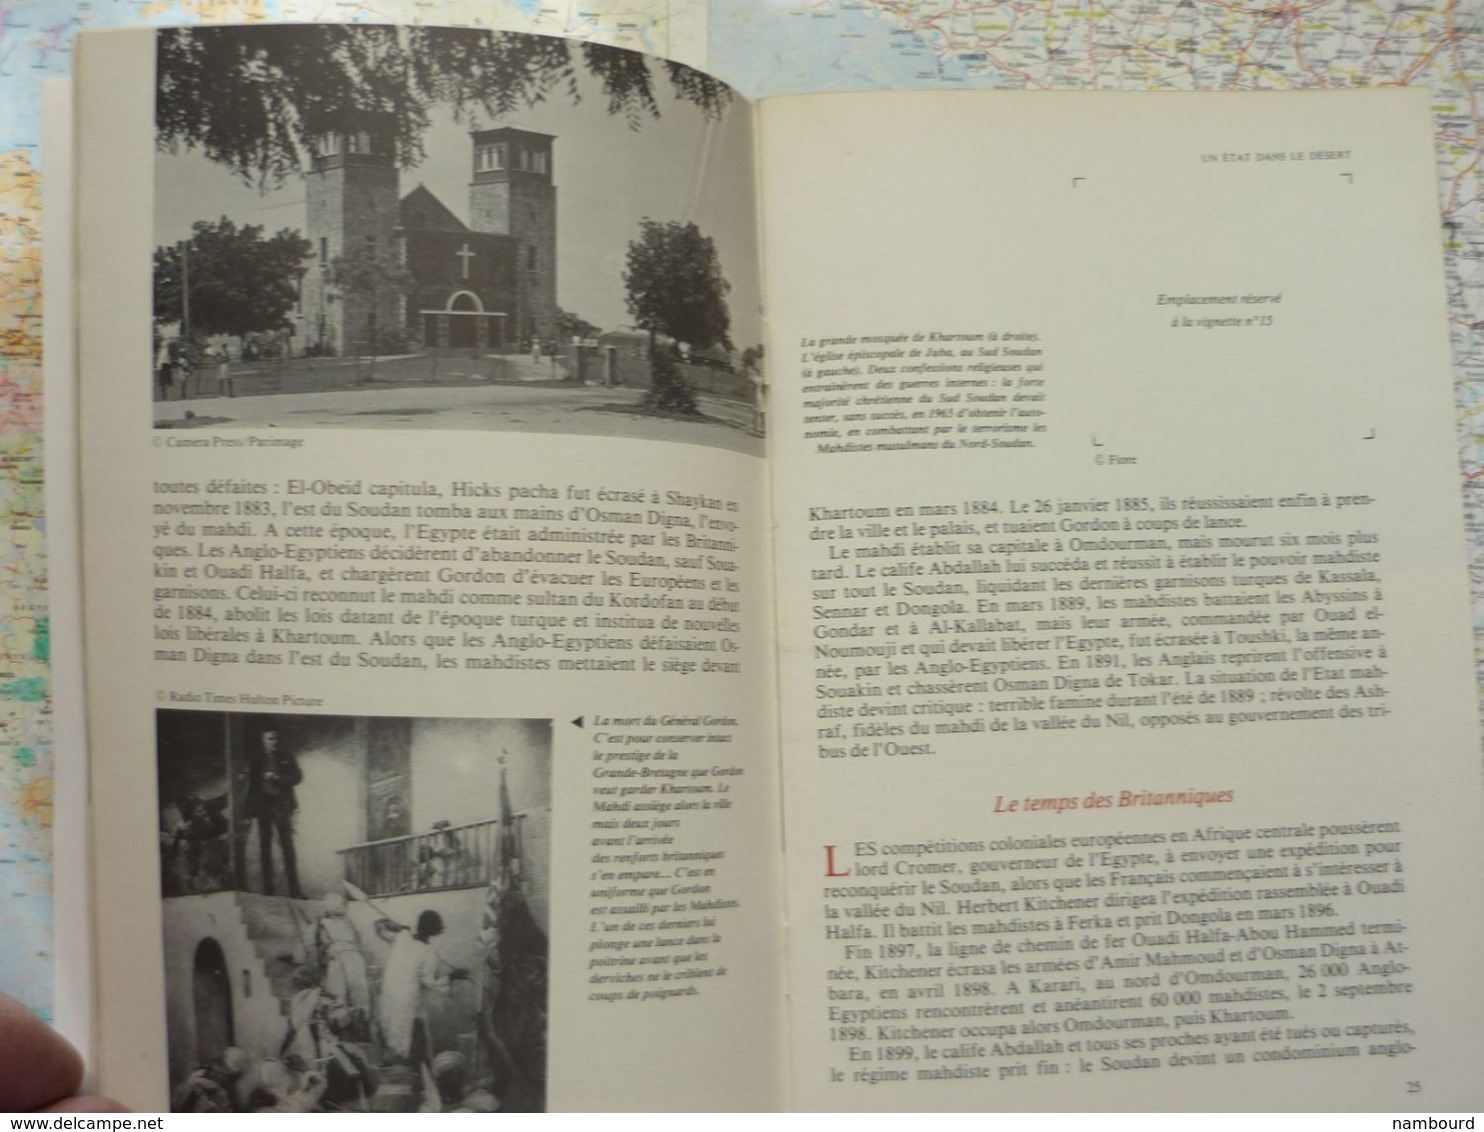 Tour Du Monde N°221 République Démocratique Du Soudan - Traditions Au Laos - Peuples Du Pacifique Février 1978 - Géographie